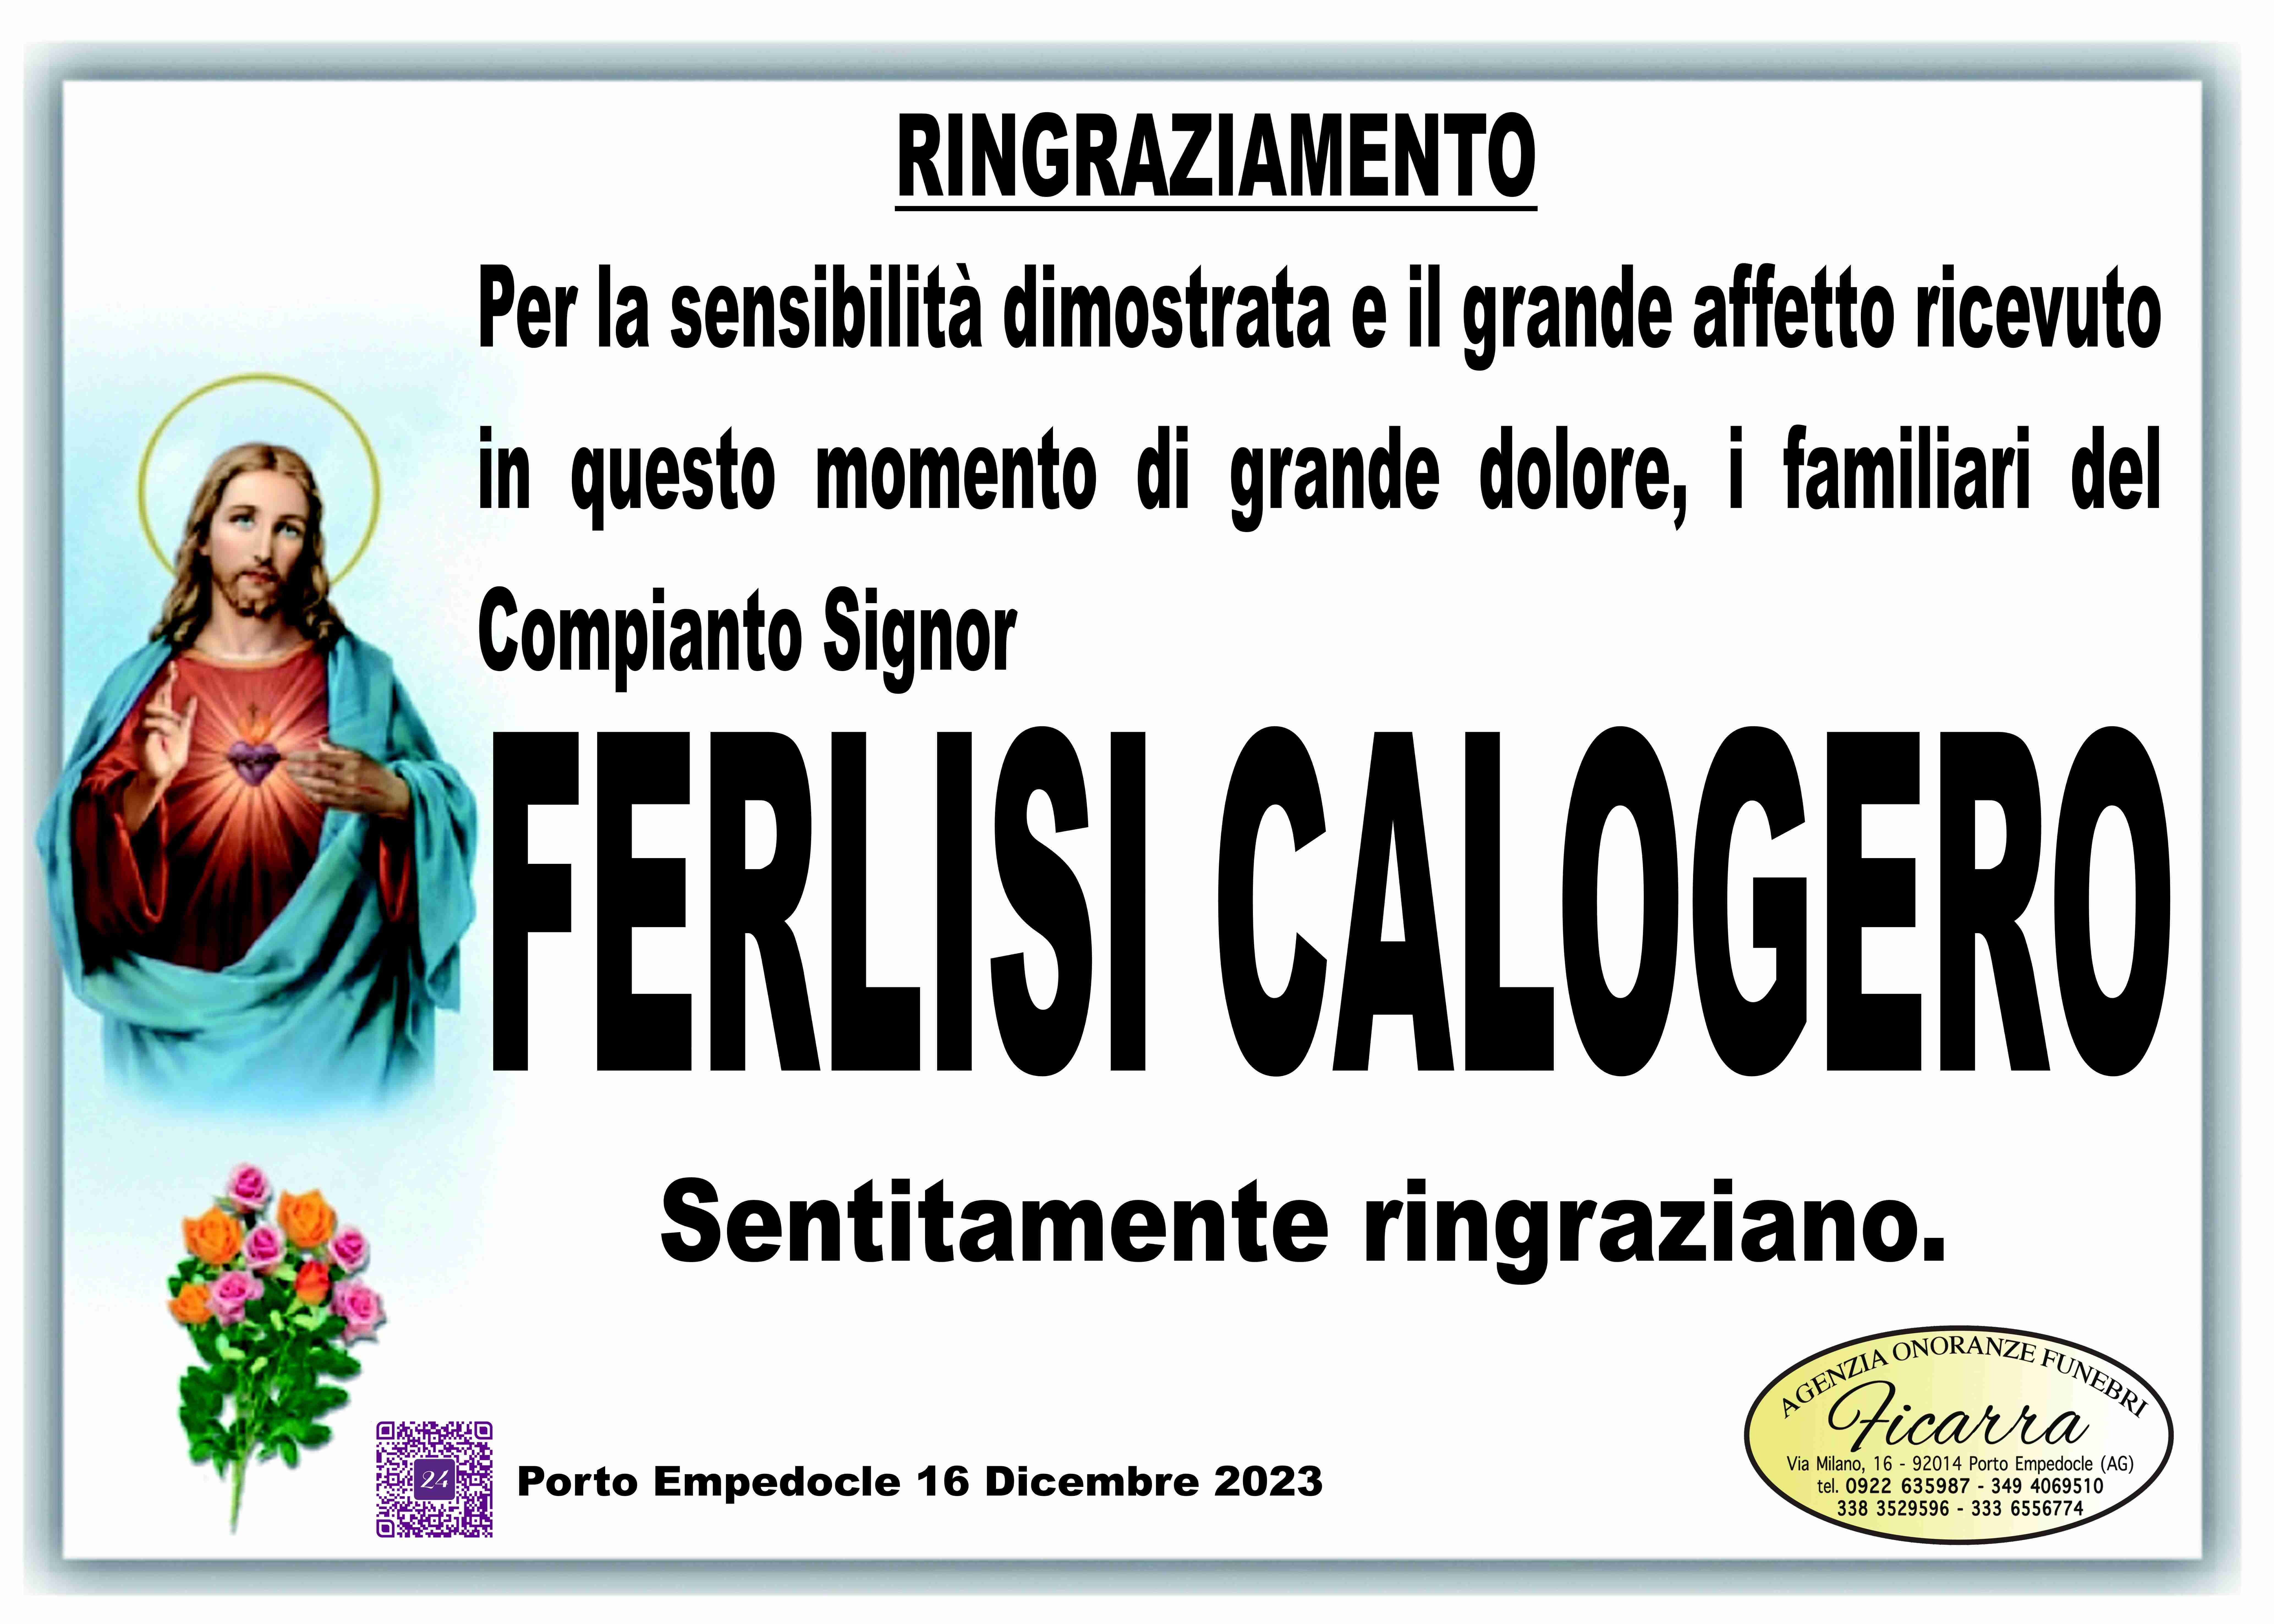 Calogero Ferlisi